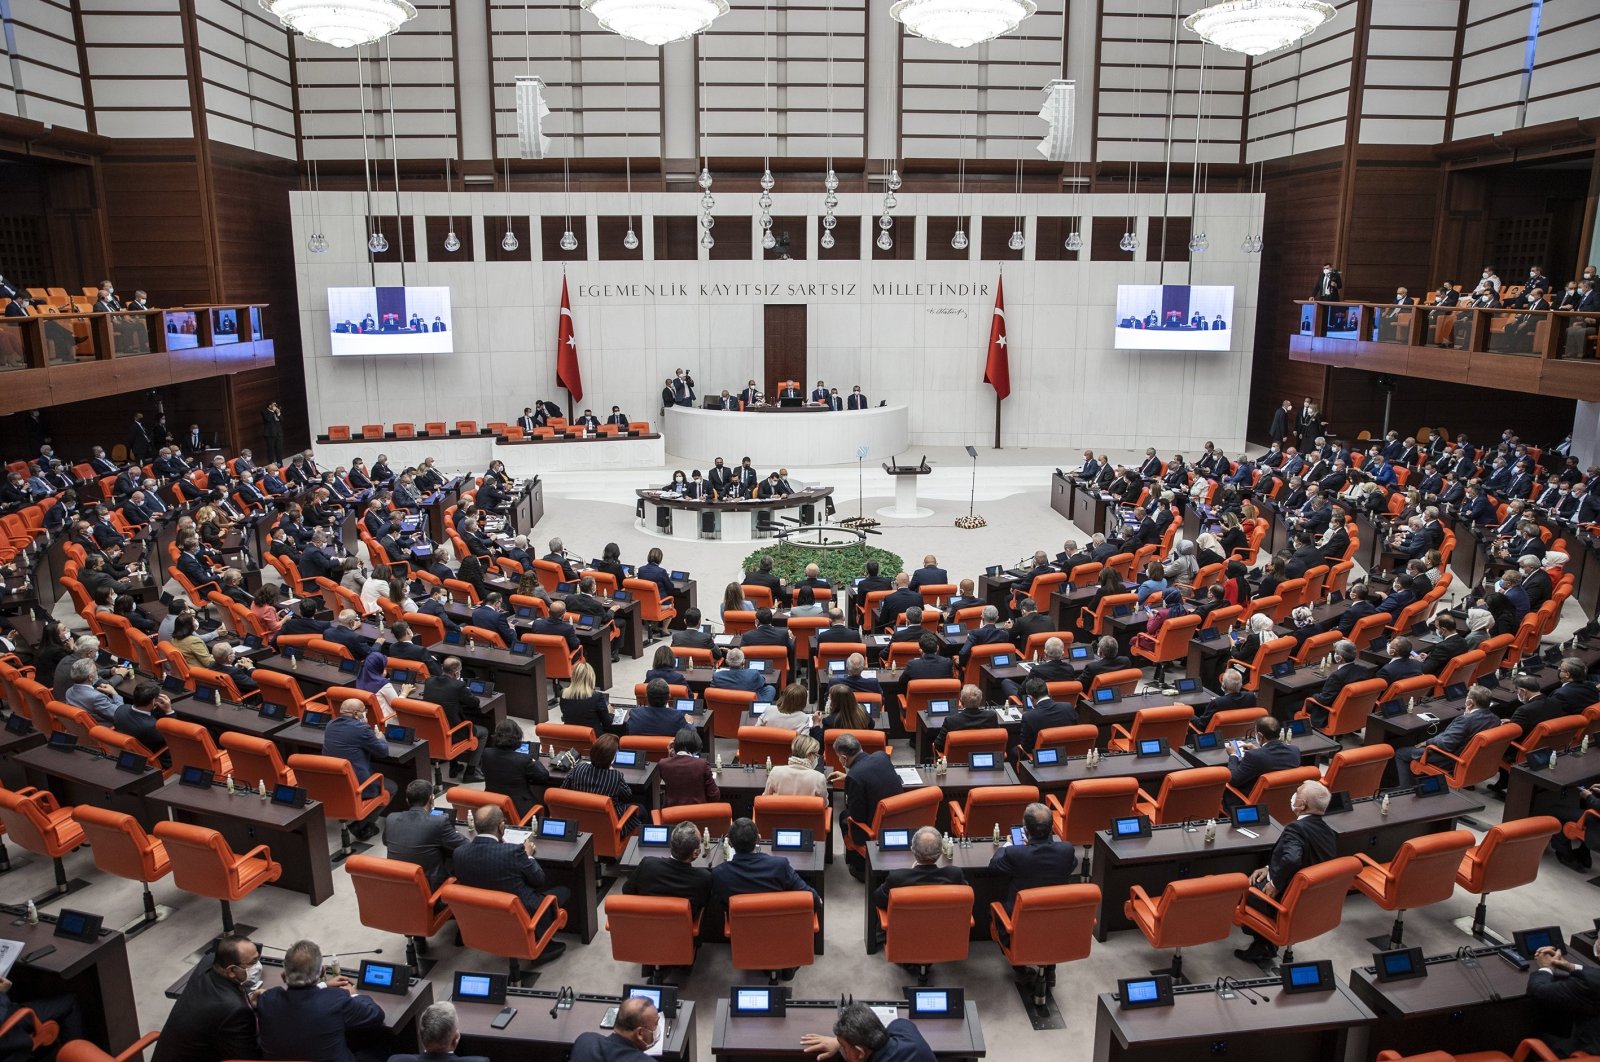 Deputi perempuan CHP menyerukan untuk mendukung perwakilan politik yang setara